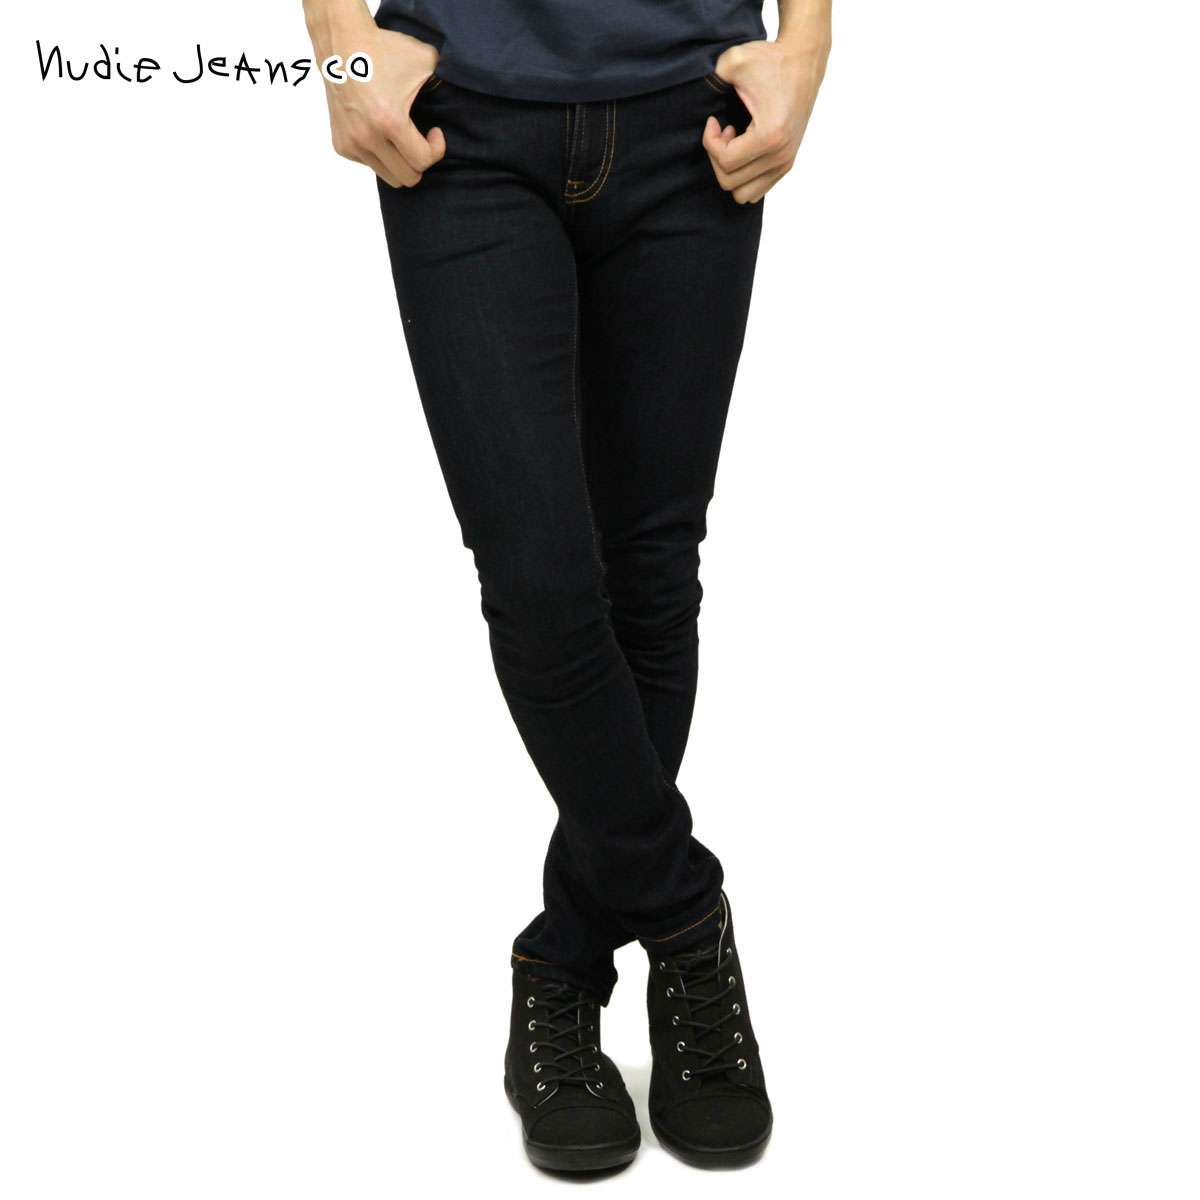 ヌーディージーンズ ジーンズ メンズ 正規販売店 Nudie Jeans ジーパン スキニーリン SKINNY LIN JEANS DRY DEEP ORANGE 576 1120830